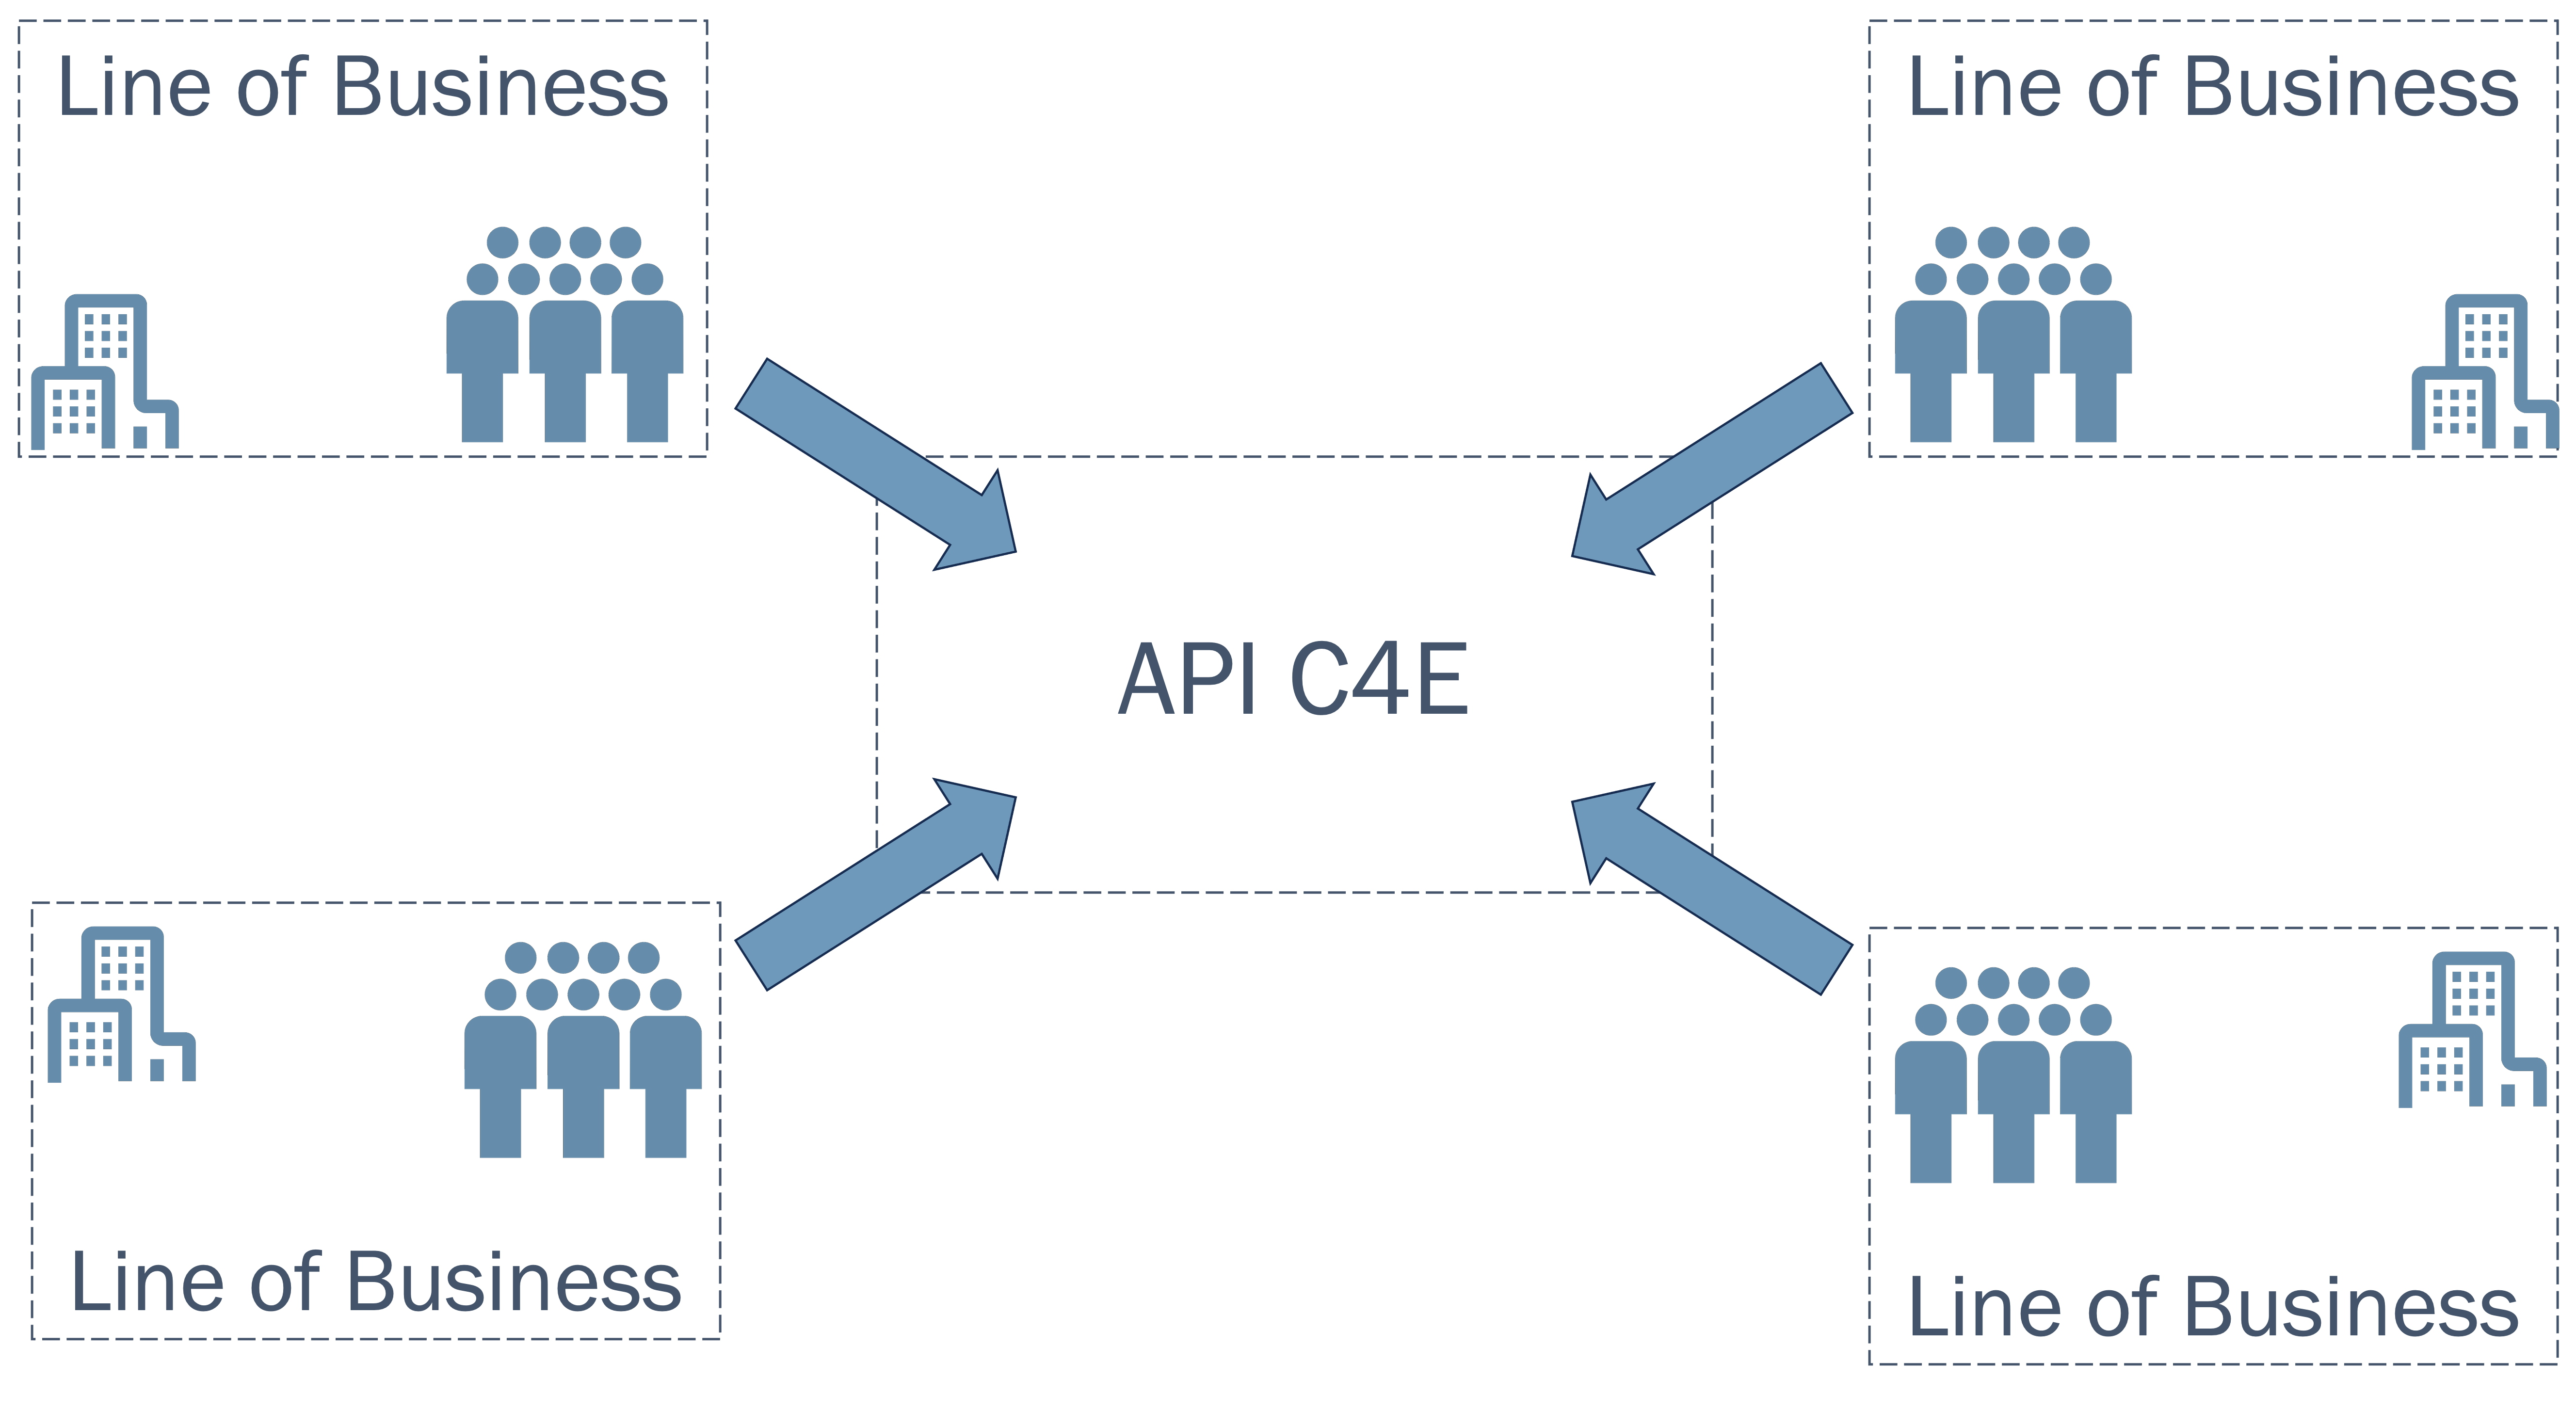 The overwhelmed API C4E